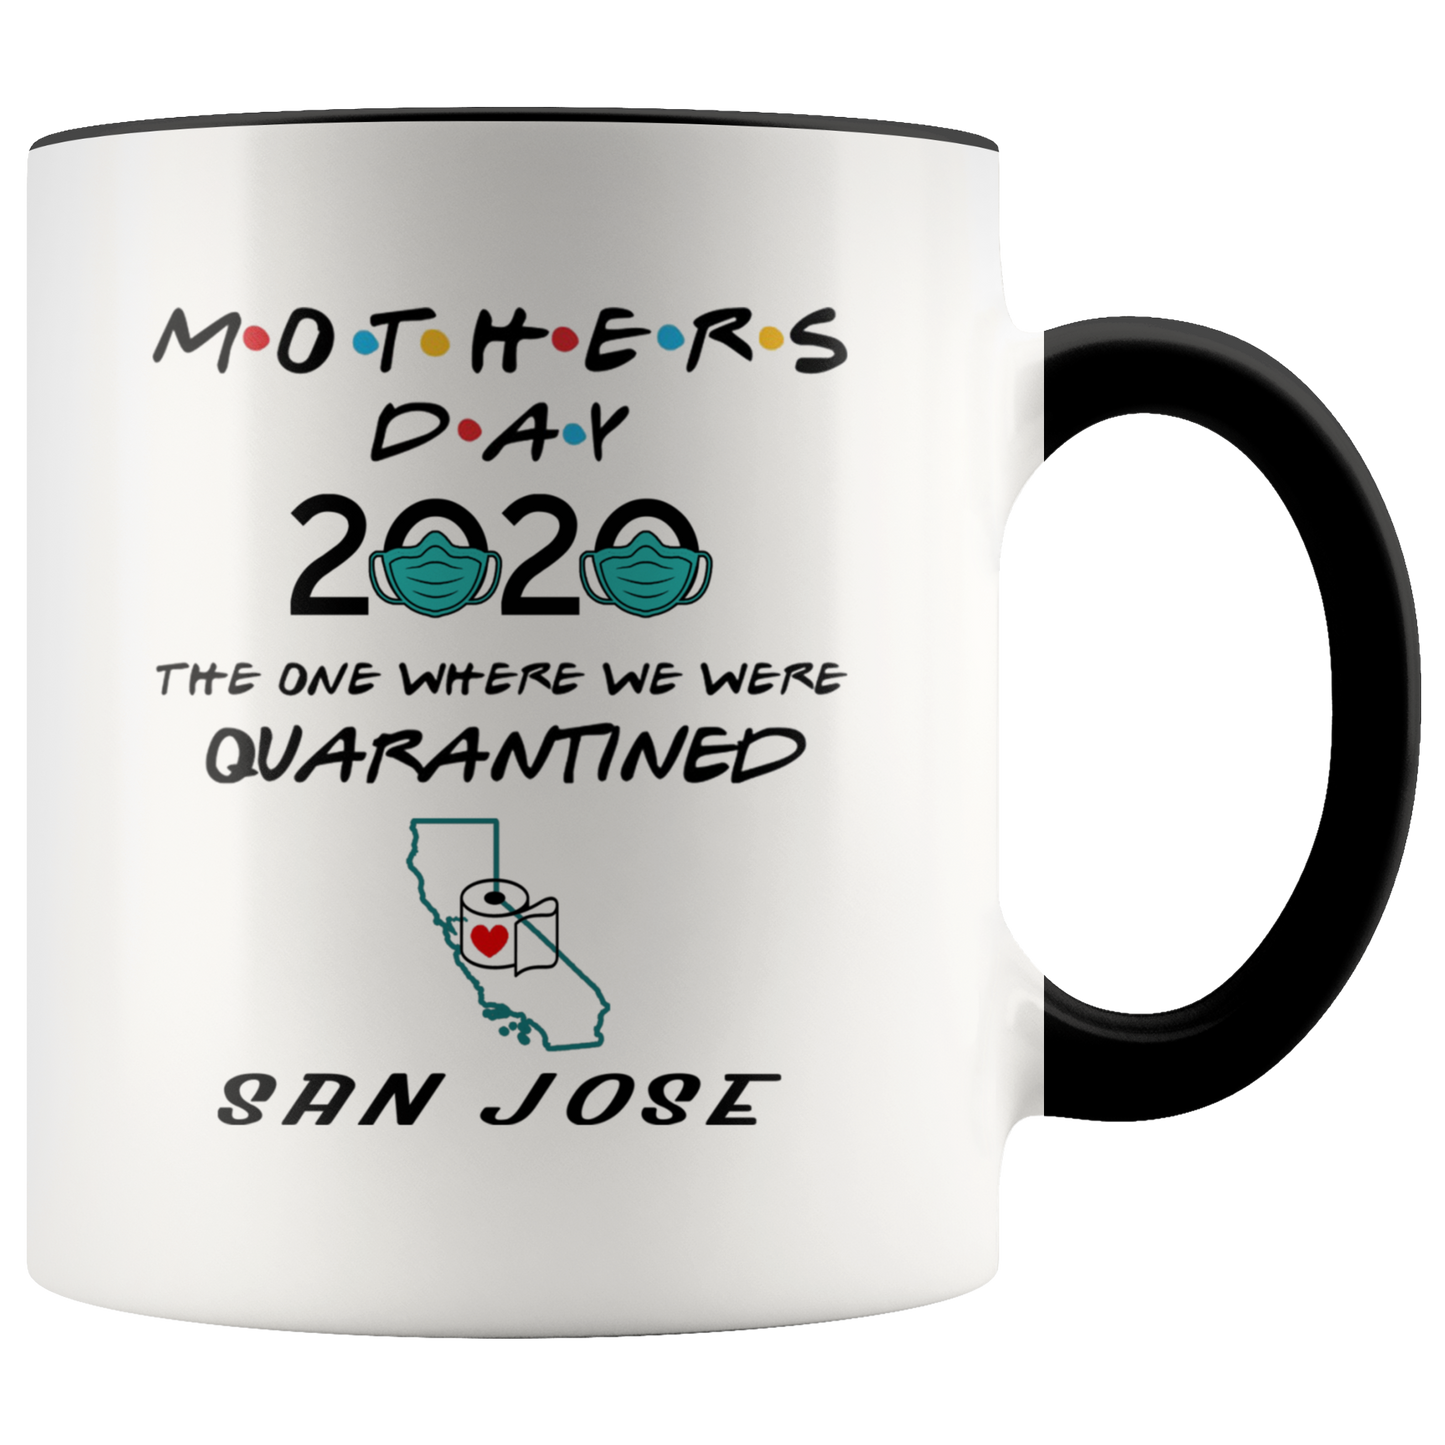 MUG01221352627-sp-25823 - [ San Jose | California ] (CC_Accent_Mug_) Mothers Day 2020 Mug Quarantine - The One Where We Were Quar